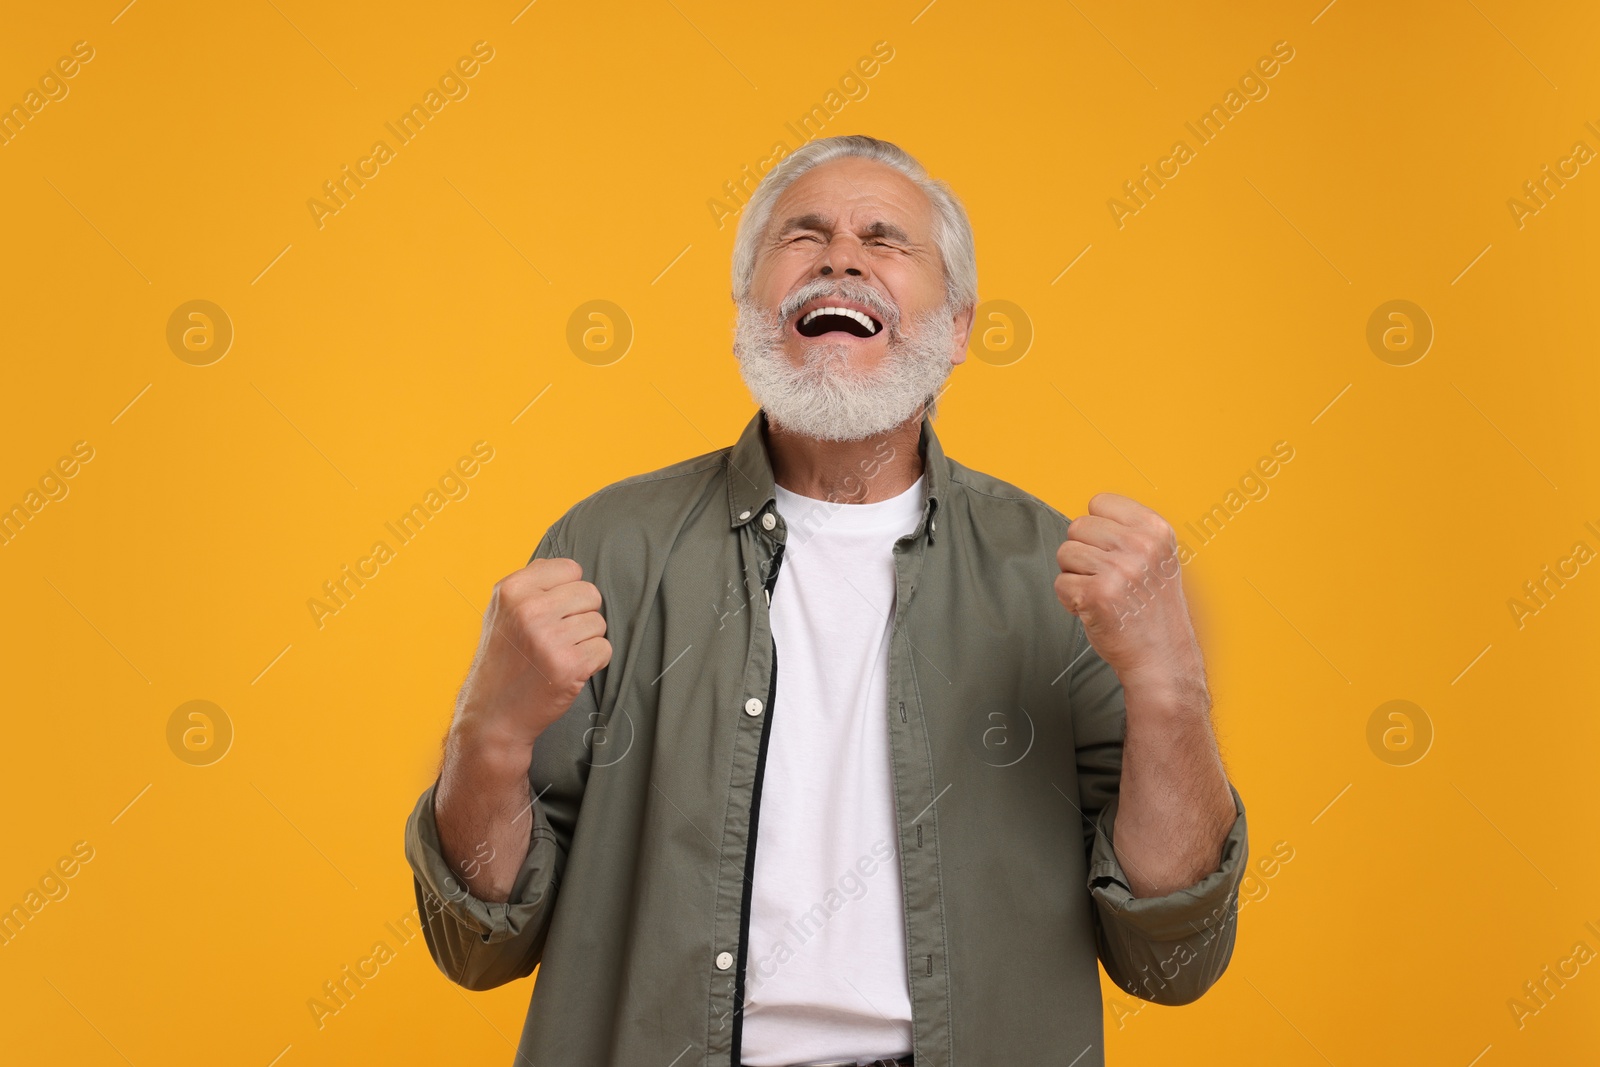 Photo of Emotional senior sports fan celebrating on yellow background